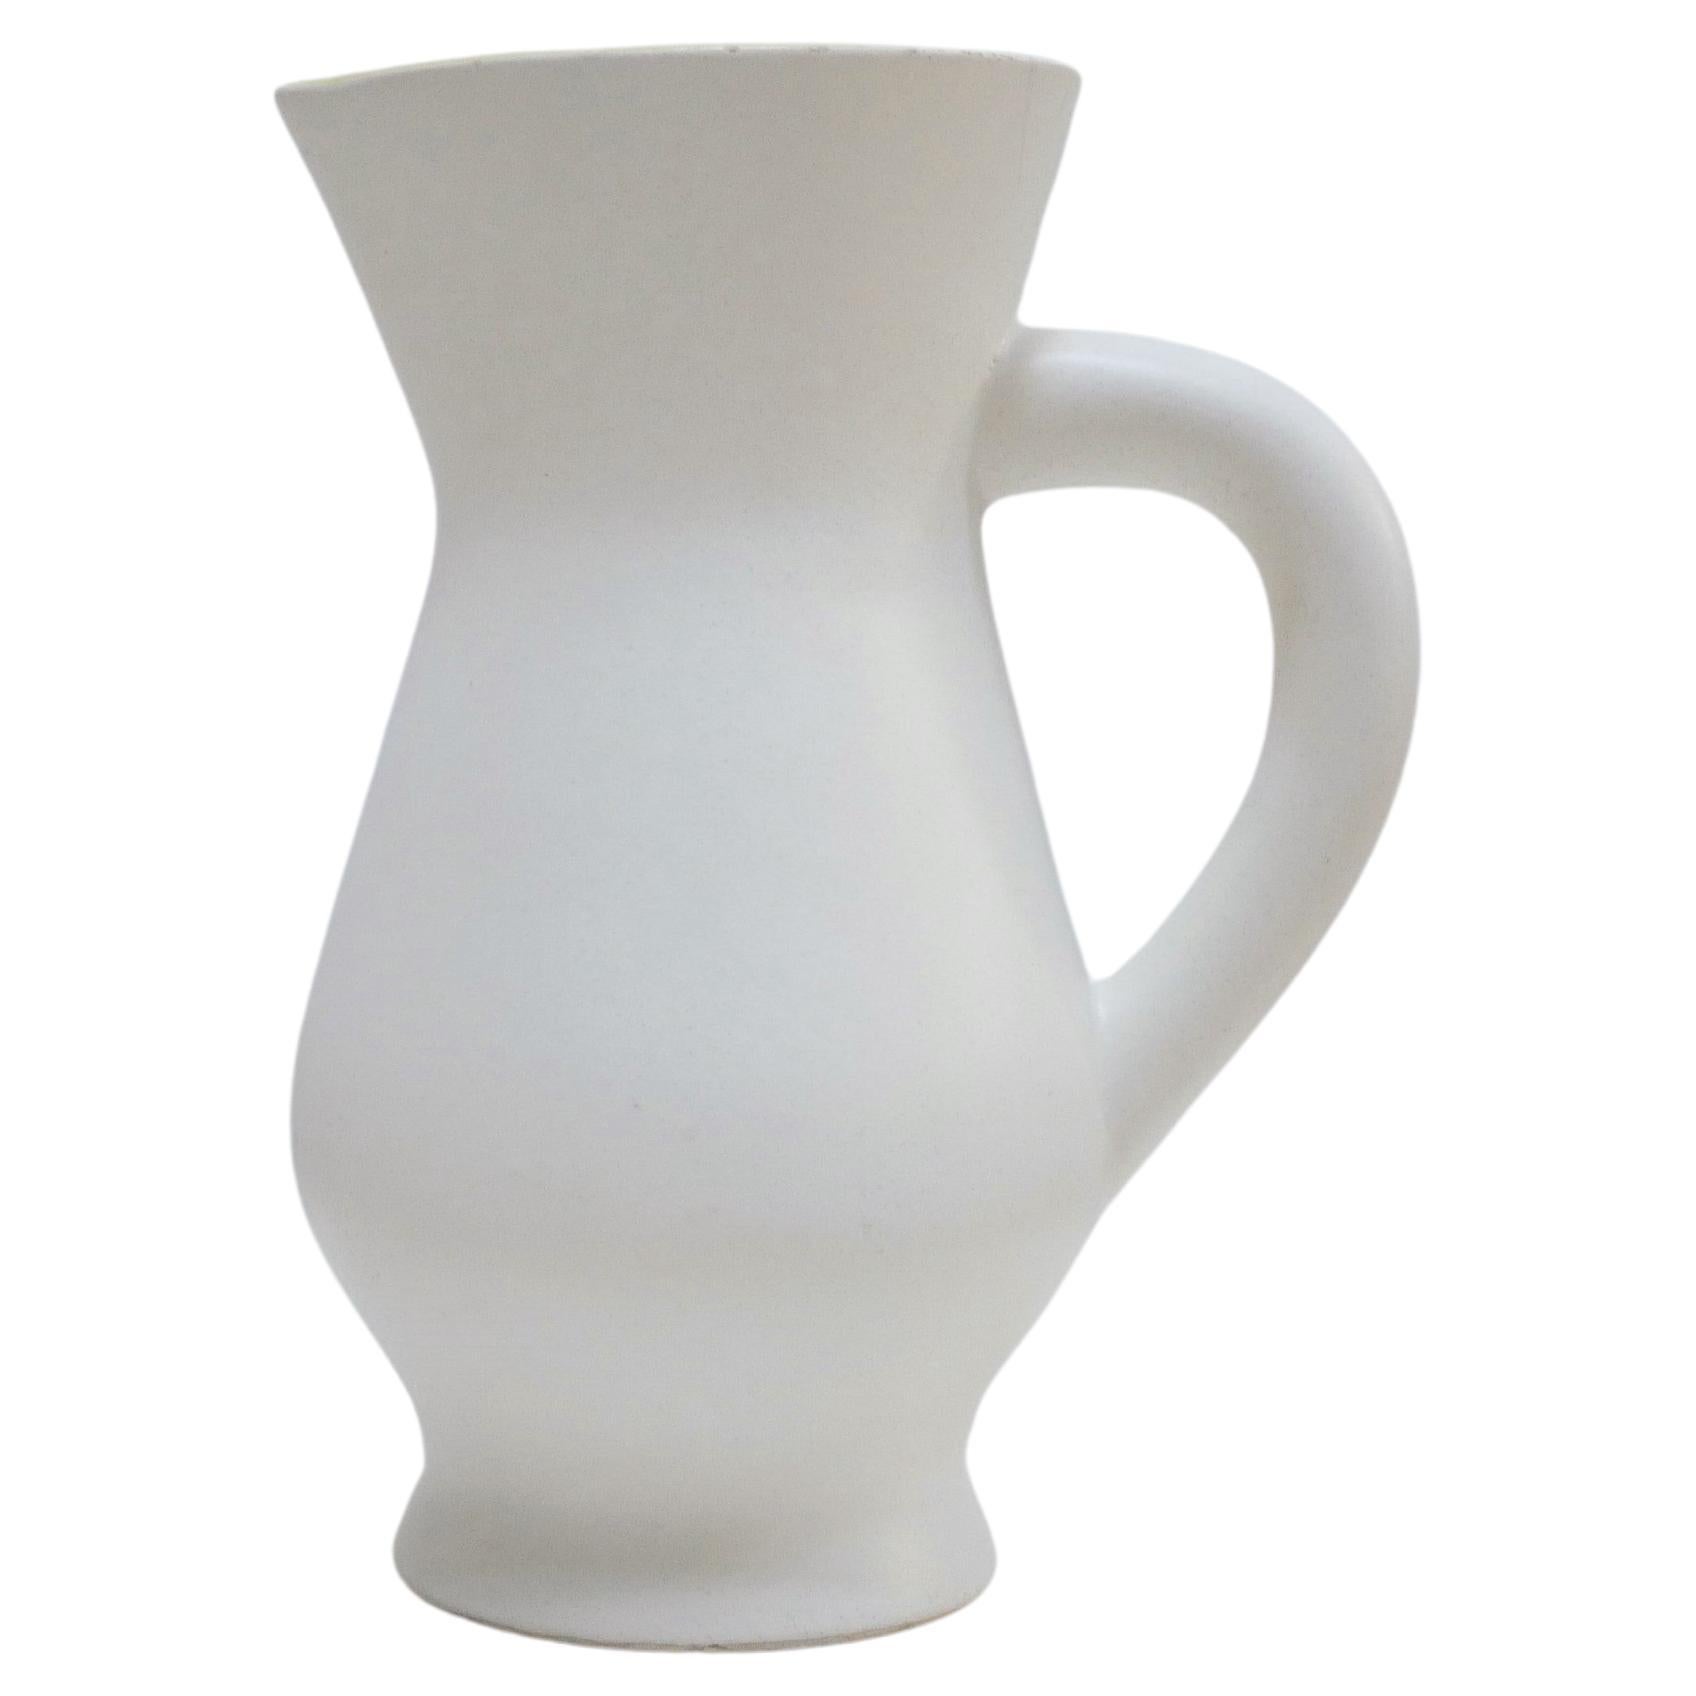 Vintage ceramic pitcher by the Saint Clément France factory For Sale